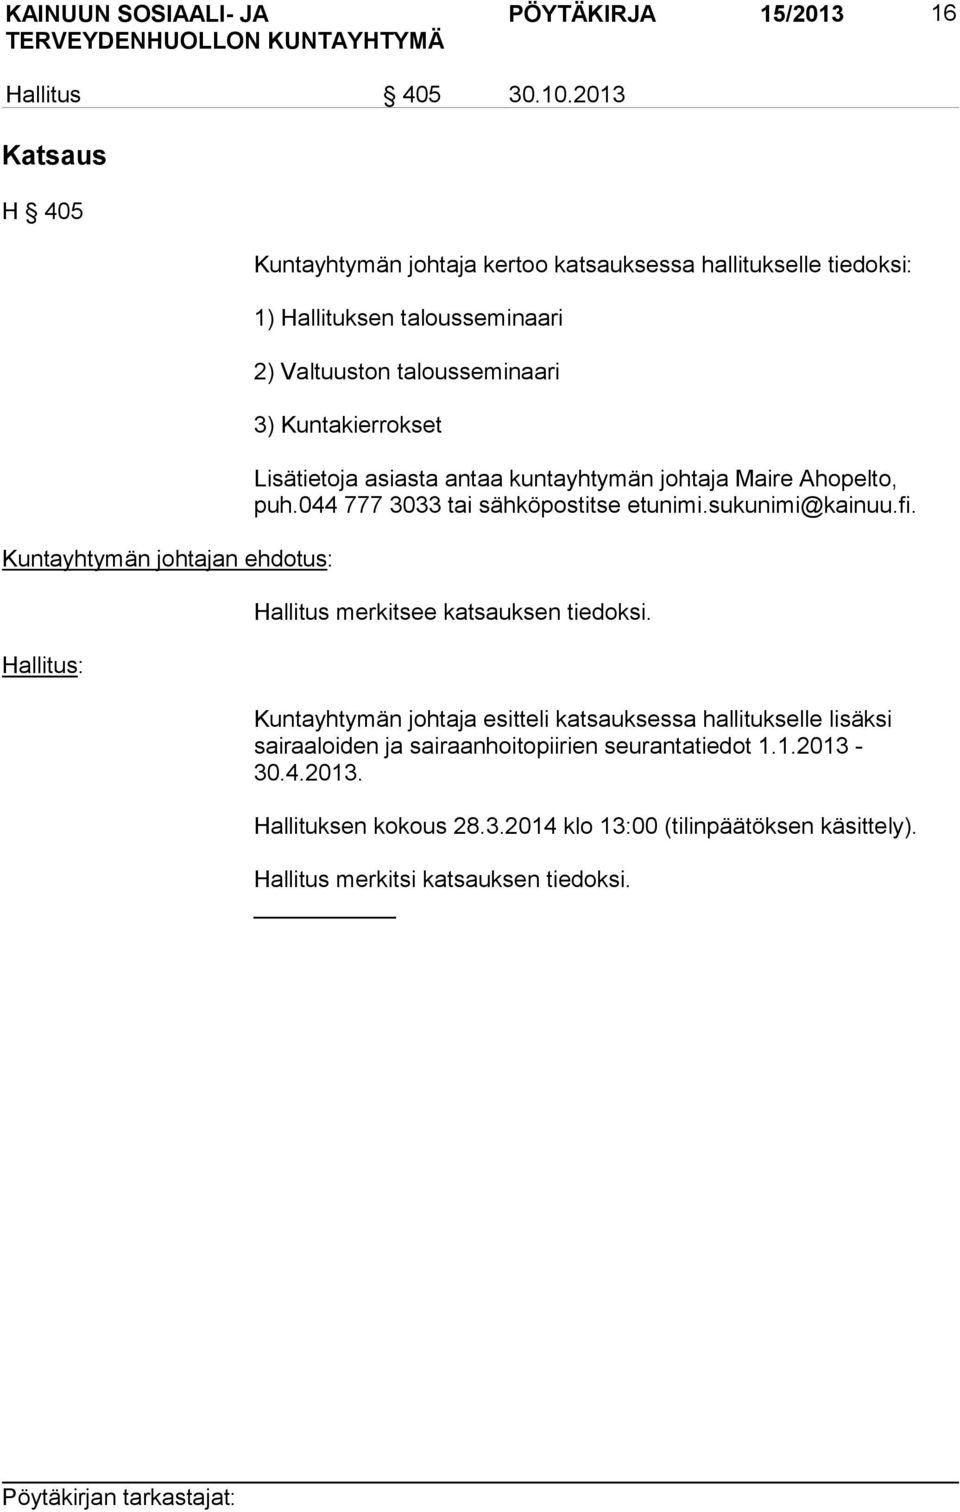 Valtuuston talousseminaari 3) Kuntakierrokset Lisätietoja asiasta antaa kuntayhtymän johtaja Maire Ahopelto, puh.044 777 3033 tai sähköpostitse etunimi.